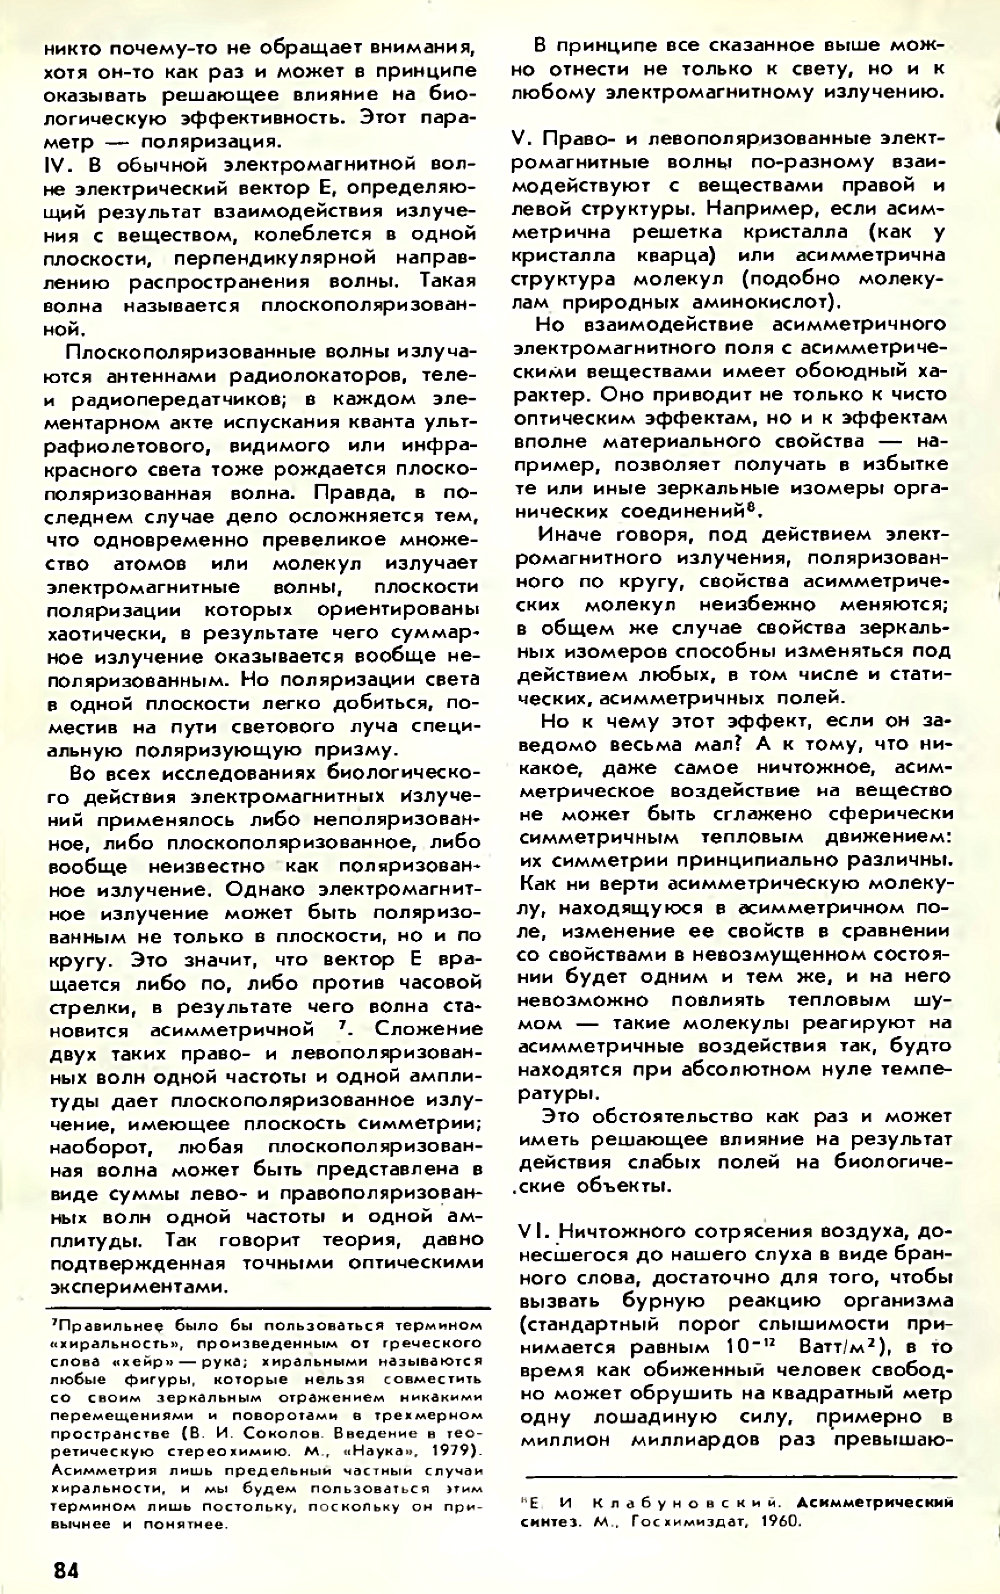 Асимметрия против хаоса, или что такое биополе. В. Жвирблис. Химия и жизнь, 1980, №12, с.81-87. Фотокопия №4